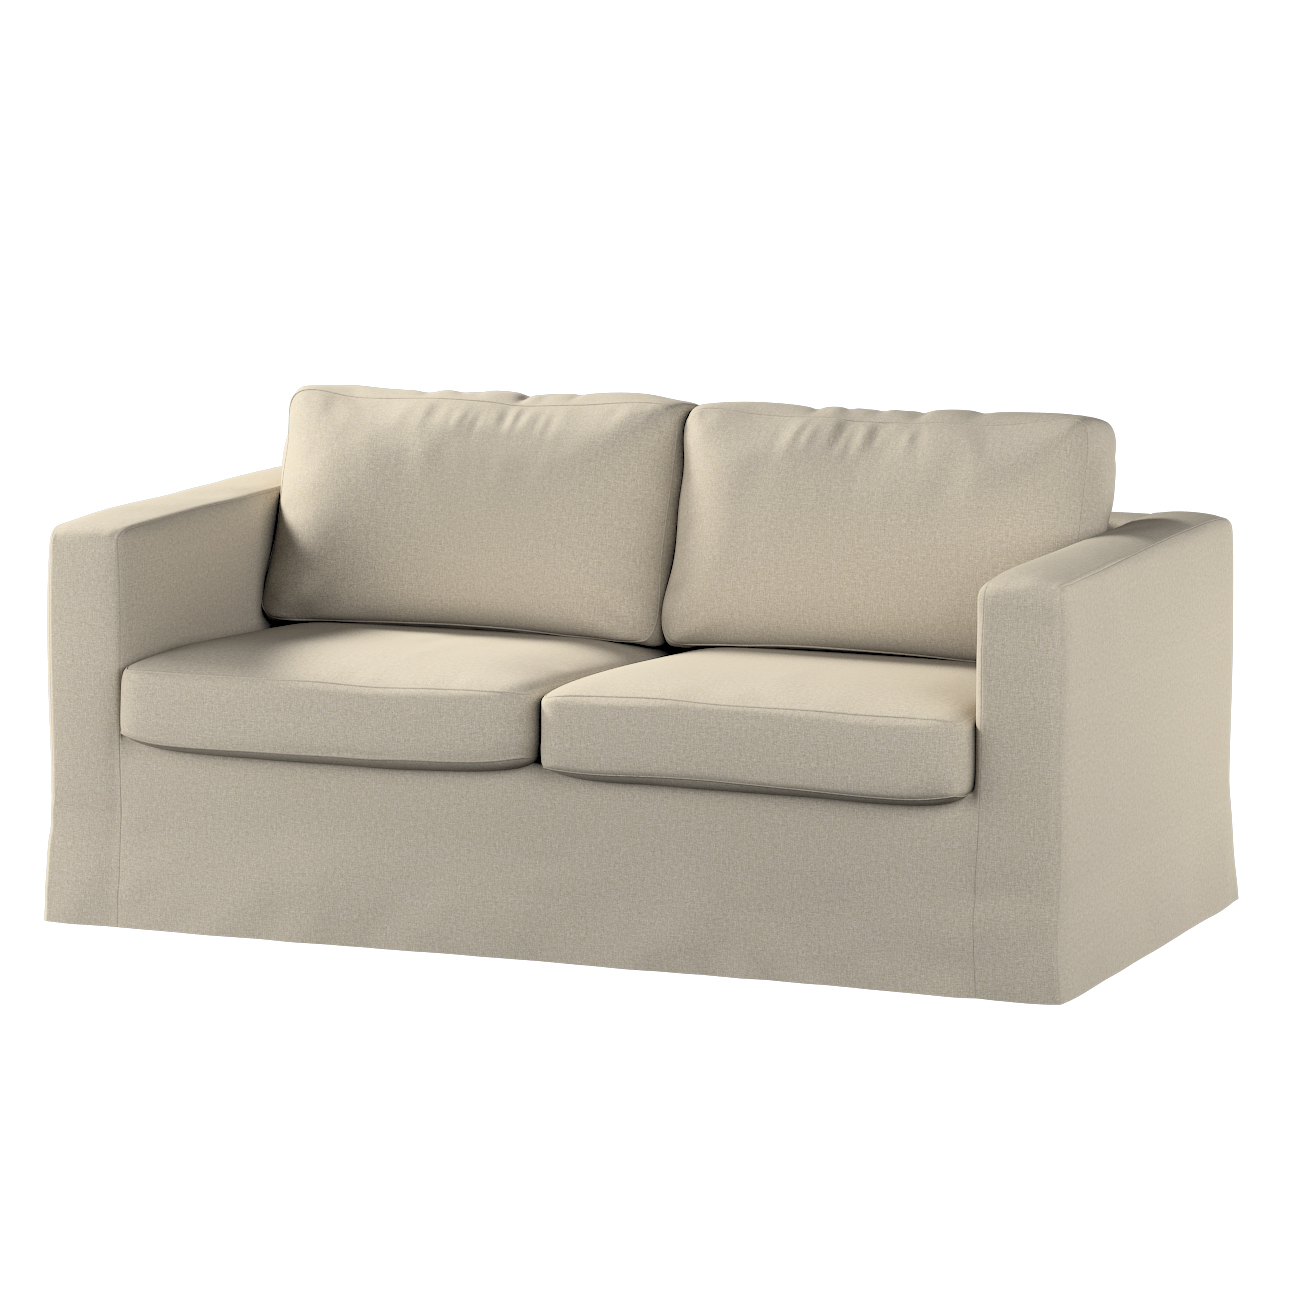 Bezug für Karlstad 2-Sitzer Sofa nicht ausklappbar, lang, grau-beige, Sofah günstig online kaufen